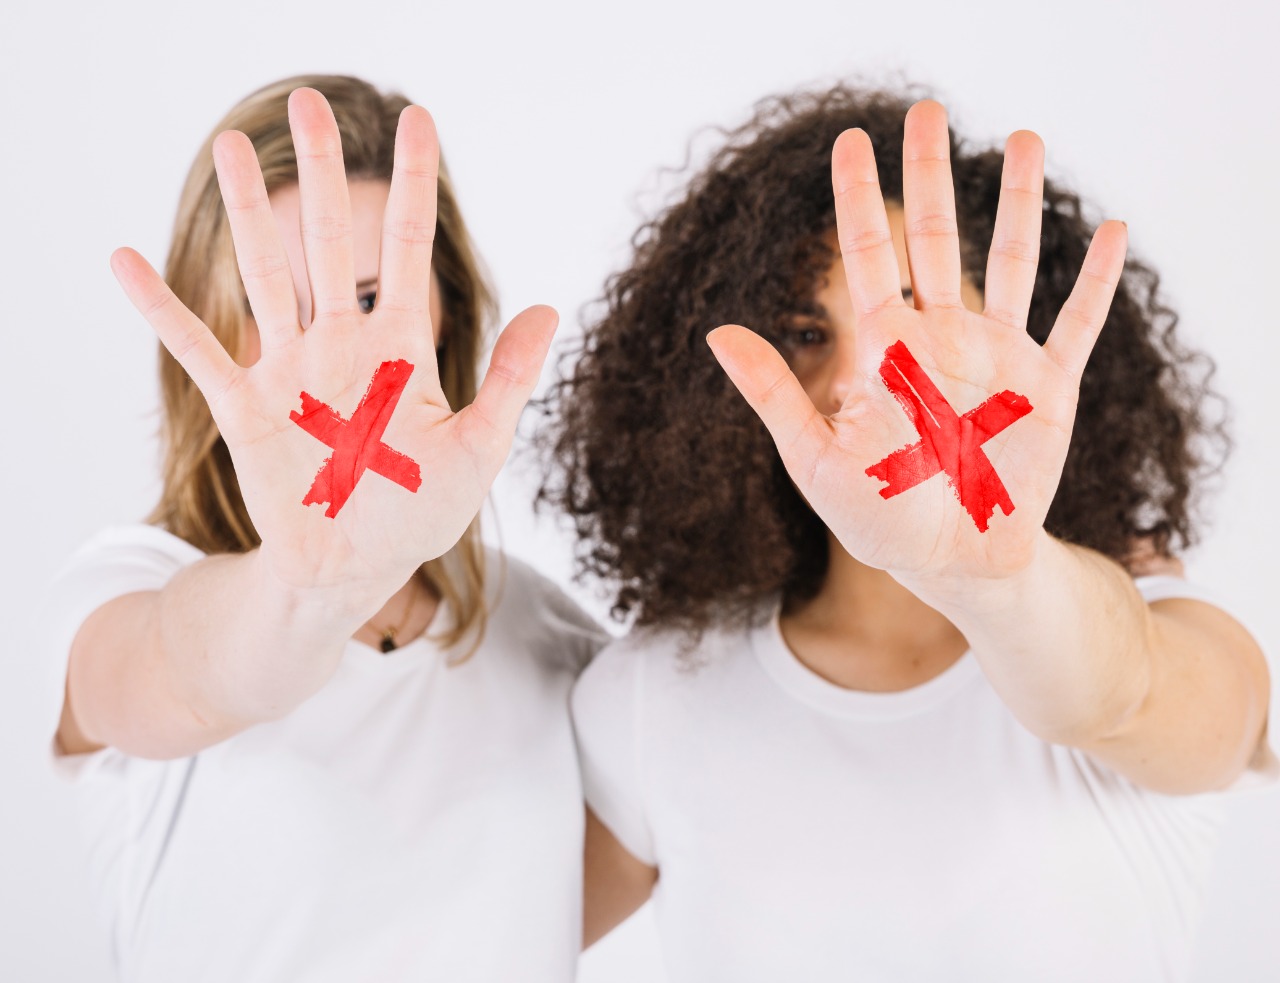 Imagem colorida. Na foto aparece duas mulheres,, de frente, com os braços estendidos aparecendo uma das palmas das mãos de cada uma, nelas há um "x" vermelho.